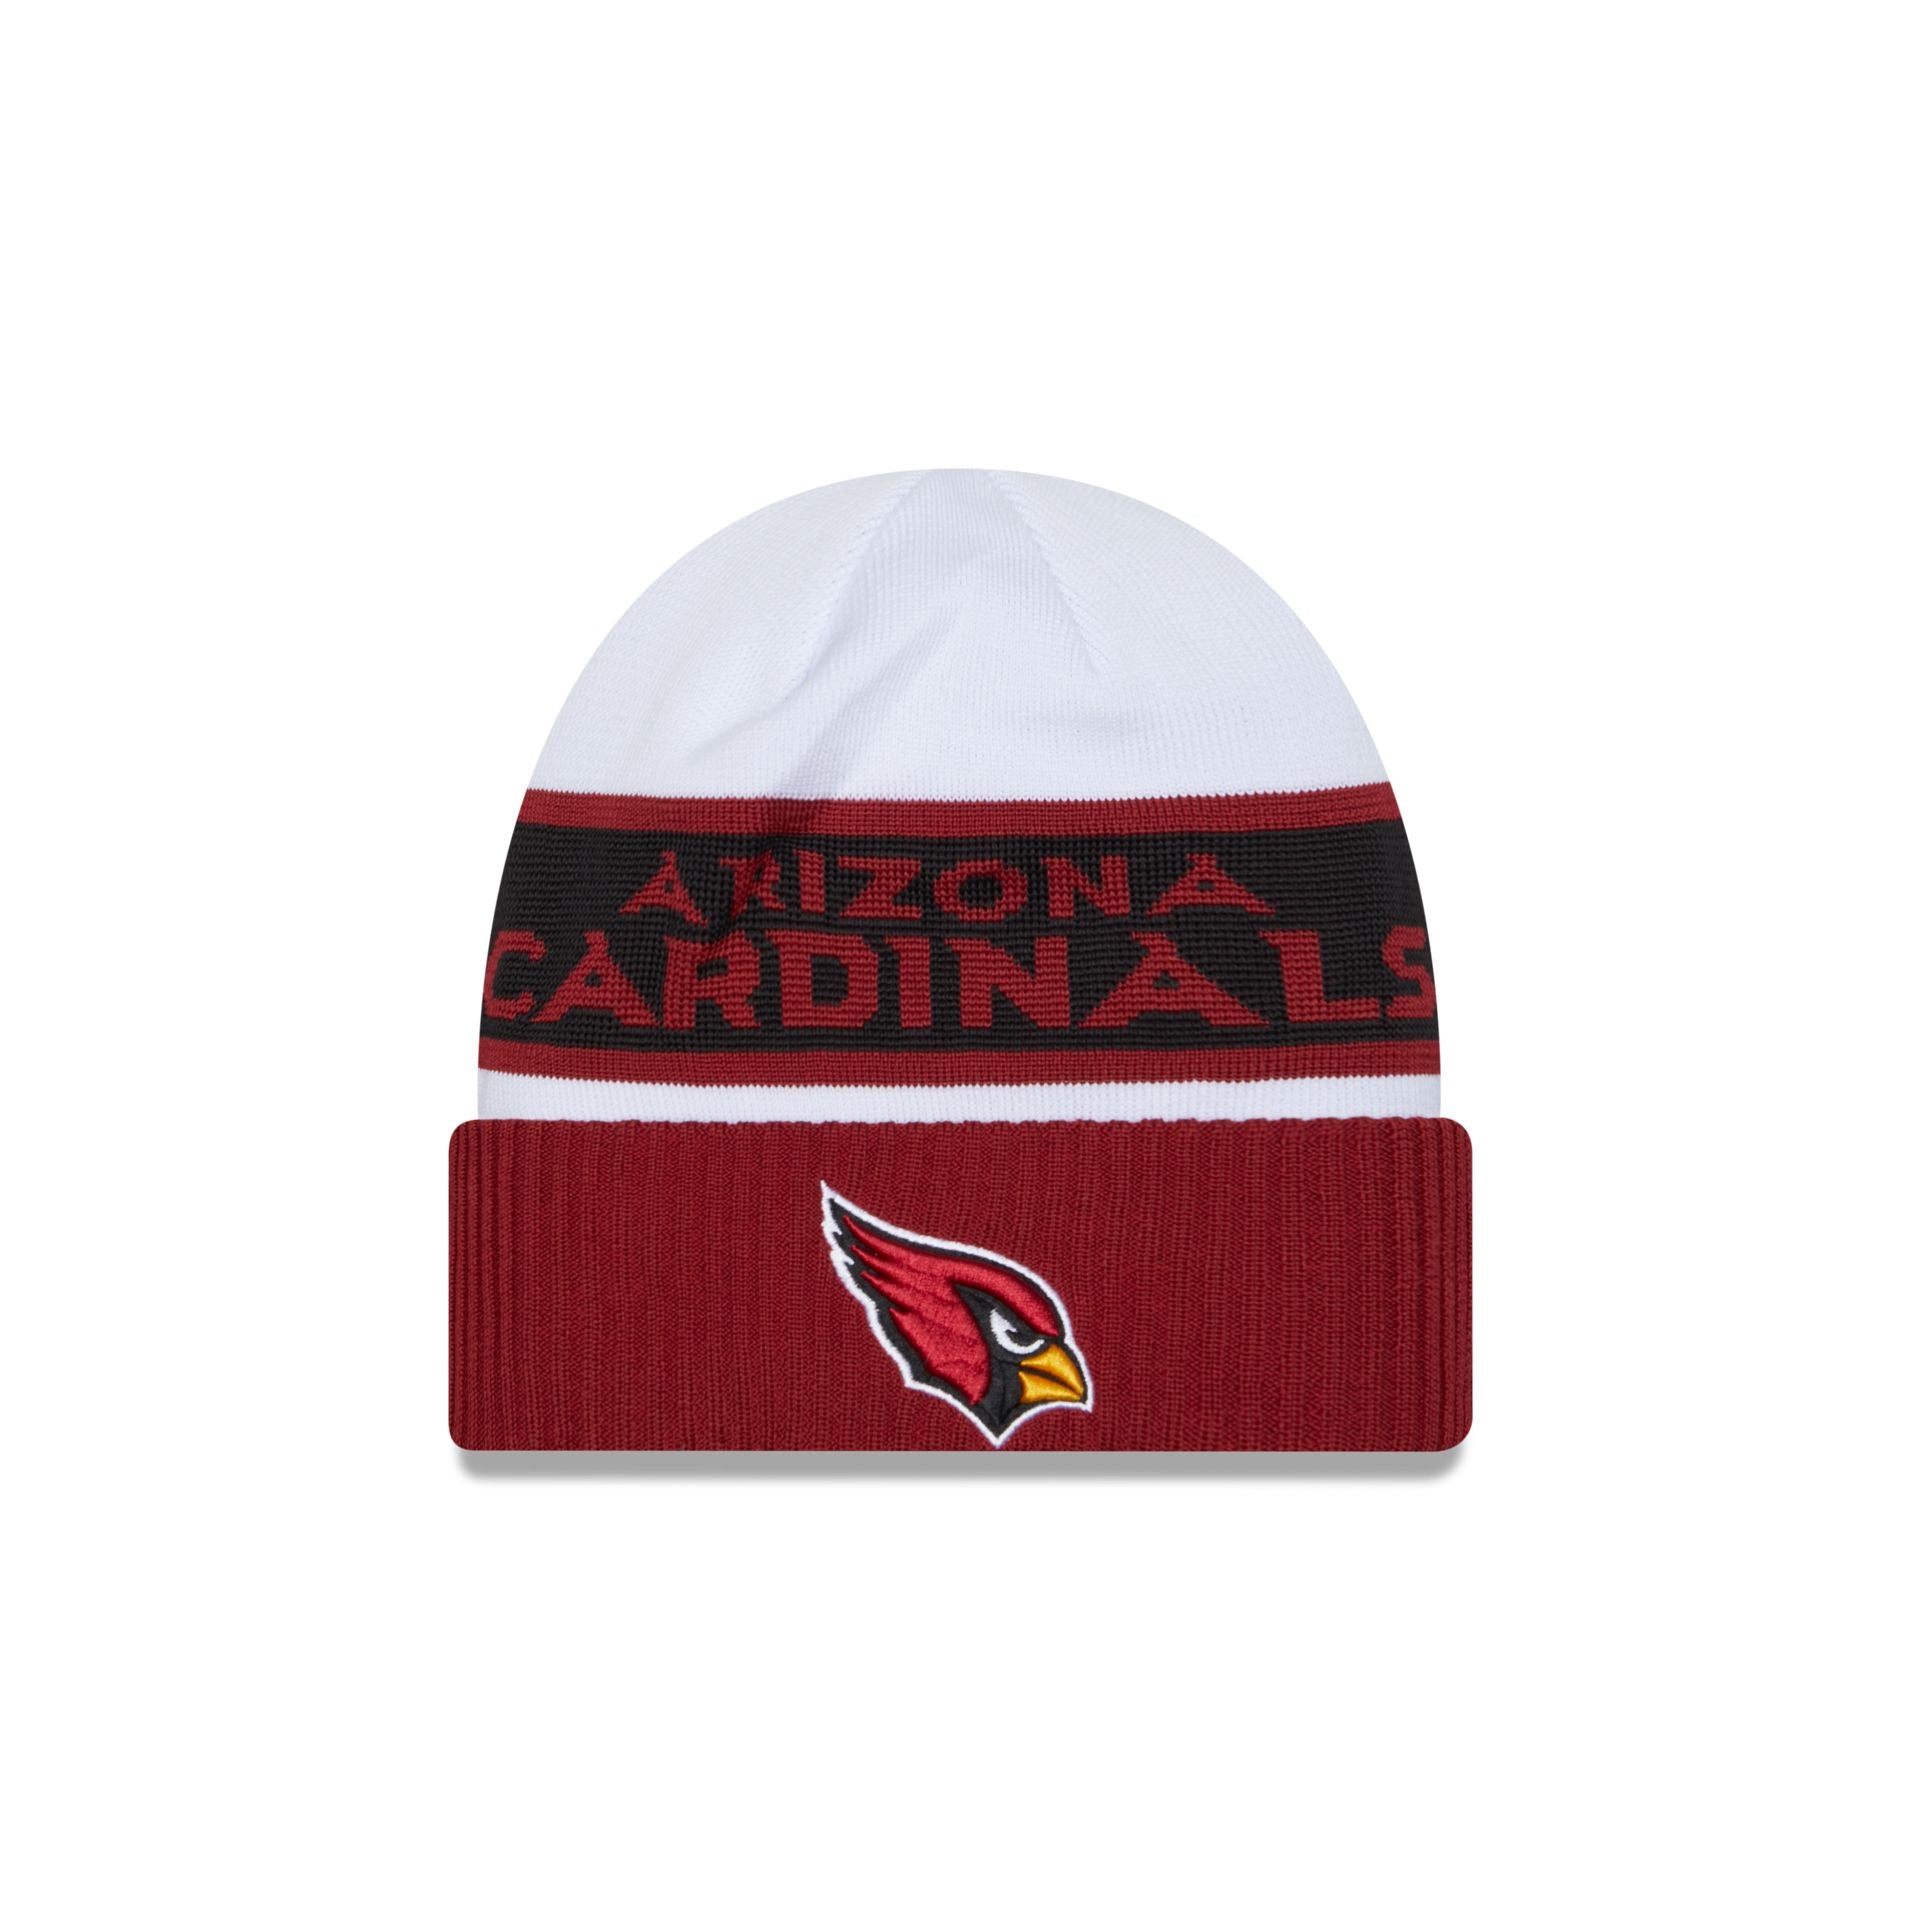 Louisville Cardinals Embroidered Beanie Hat